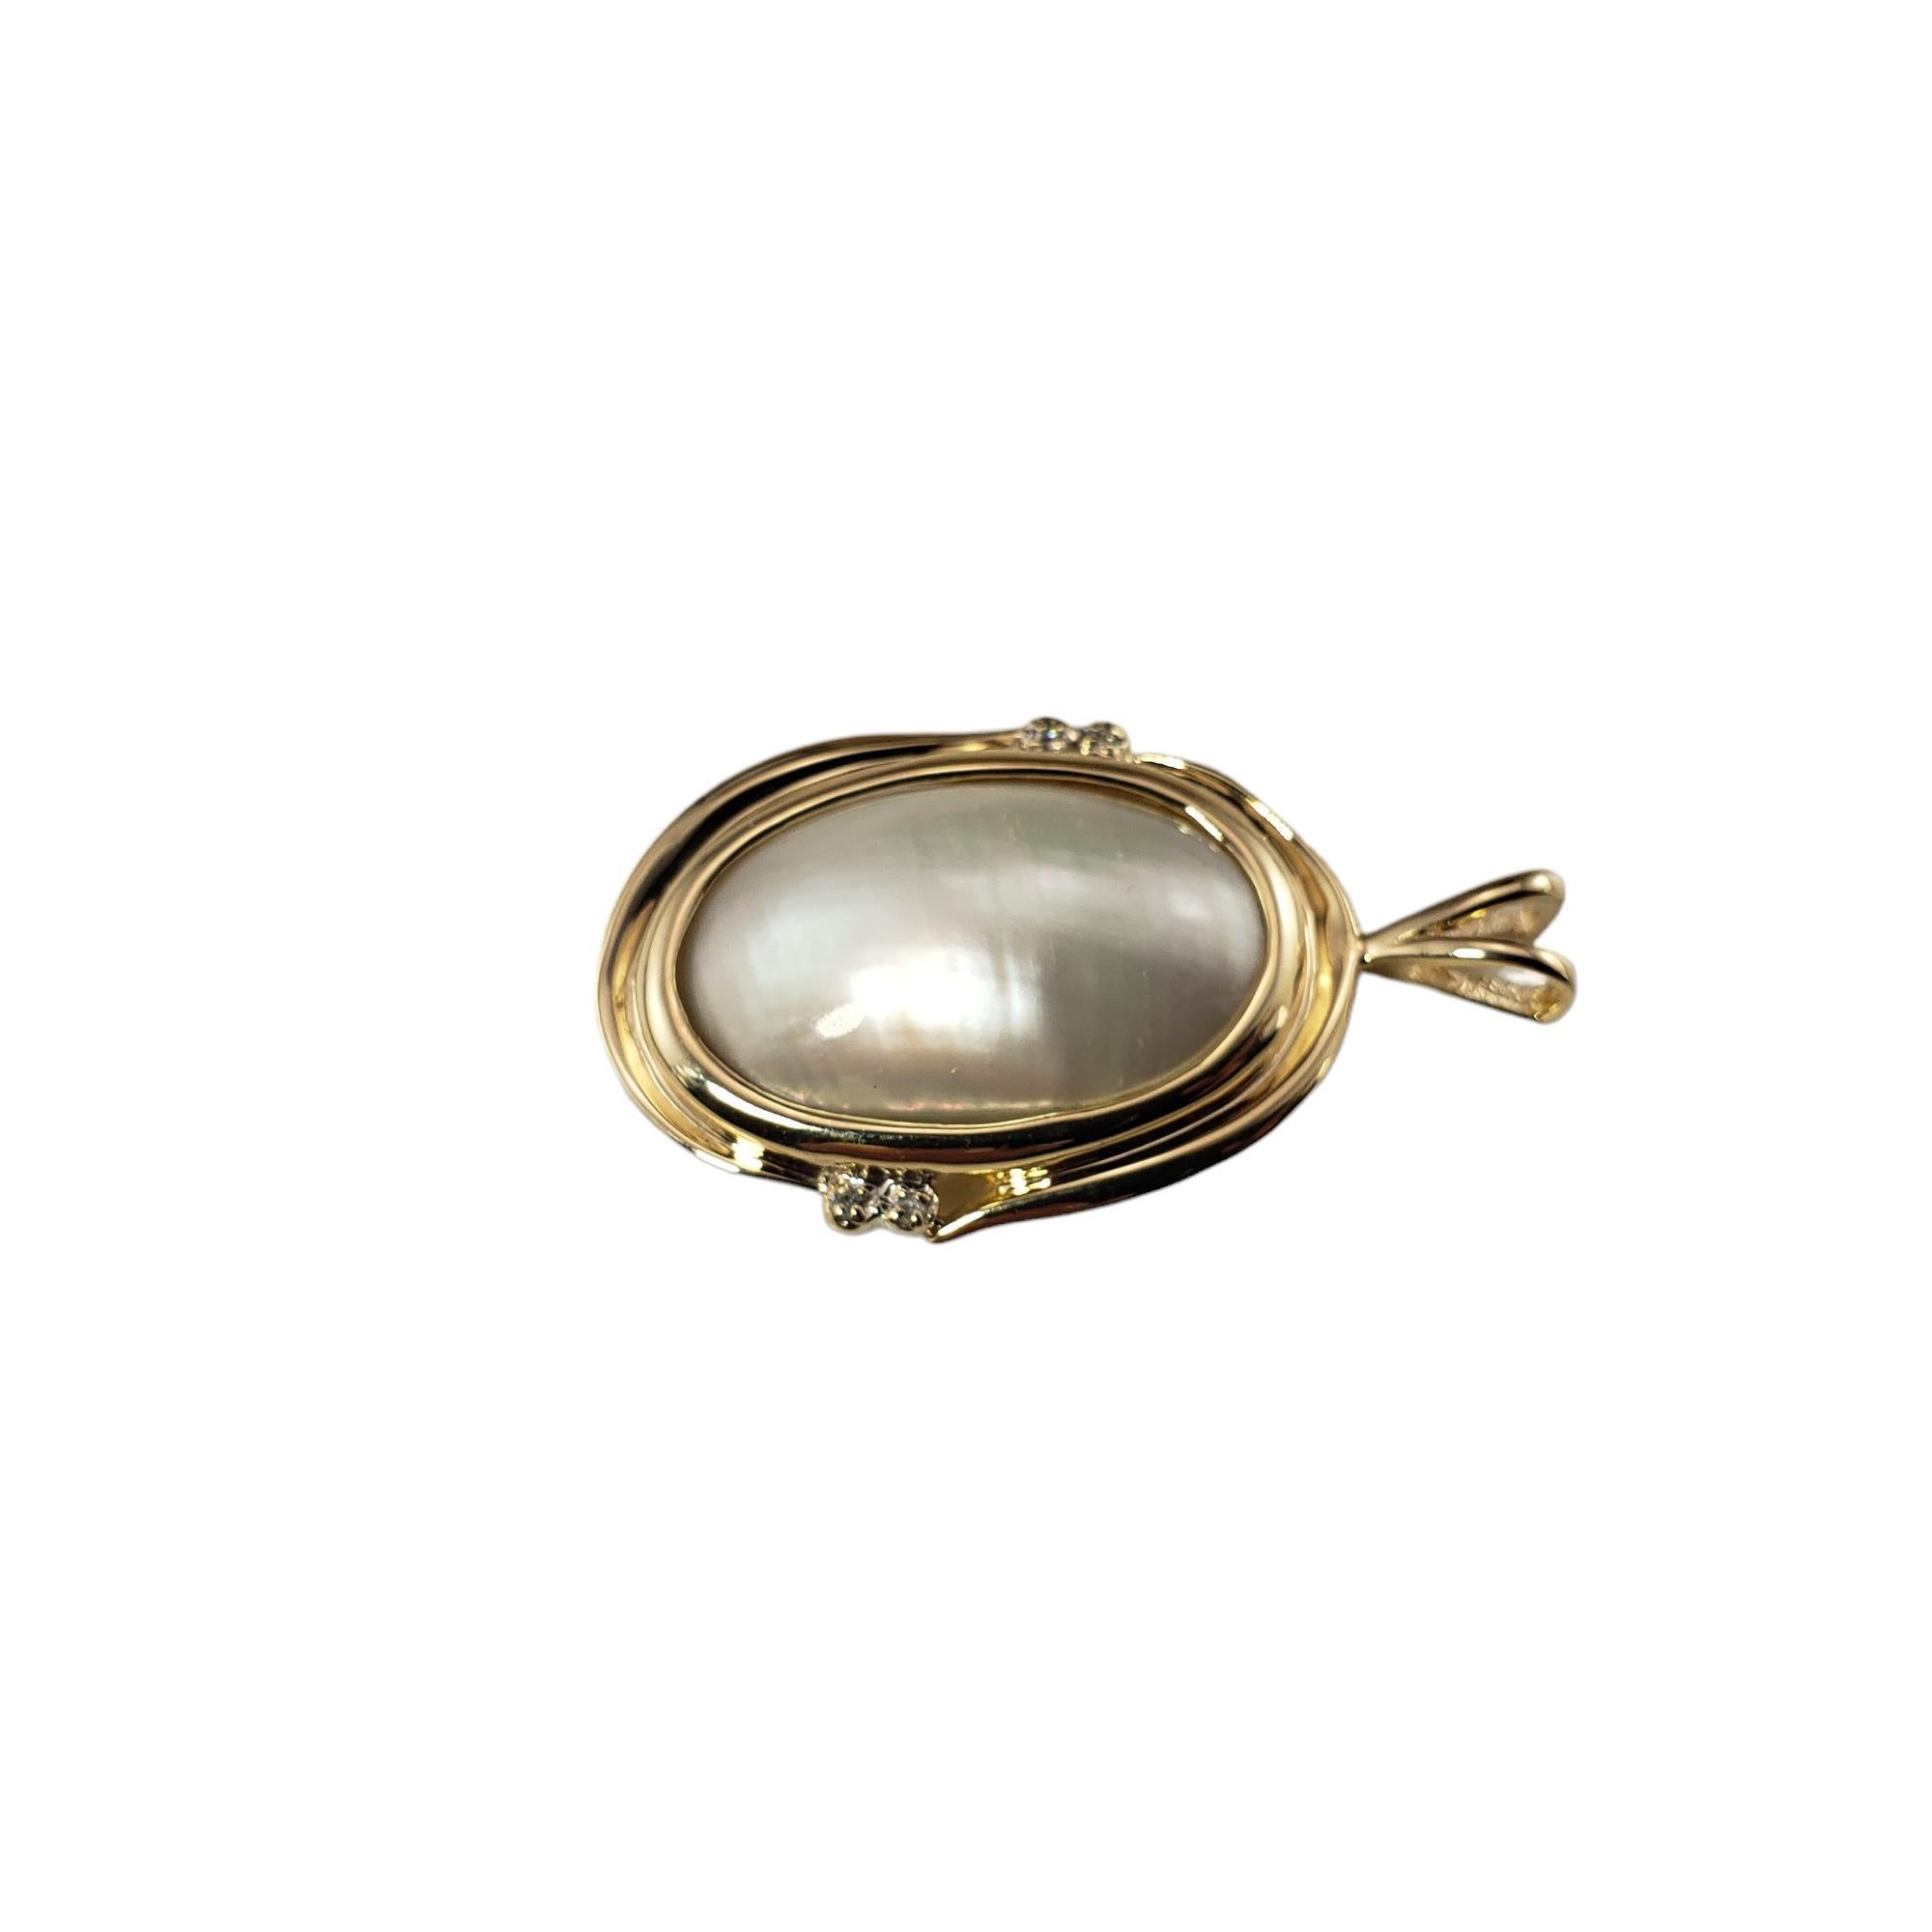 Pendentif en or jaune 14 carats avec perles de Mabe et diamants

Cet élégant pendentif présente une perle Eleg (22 mm x 14 mm) et quatre diamants ronds de taille unique sertis dans de l'or jaune 14K classique.  

Poids total approximatif des